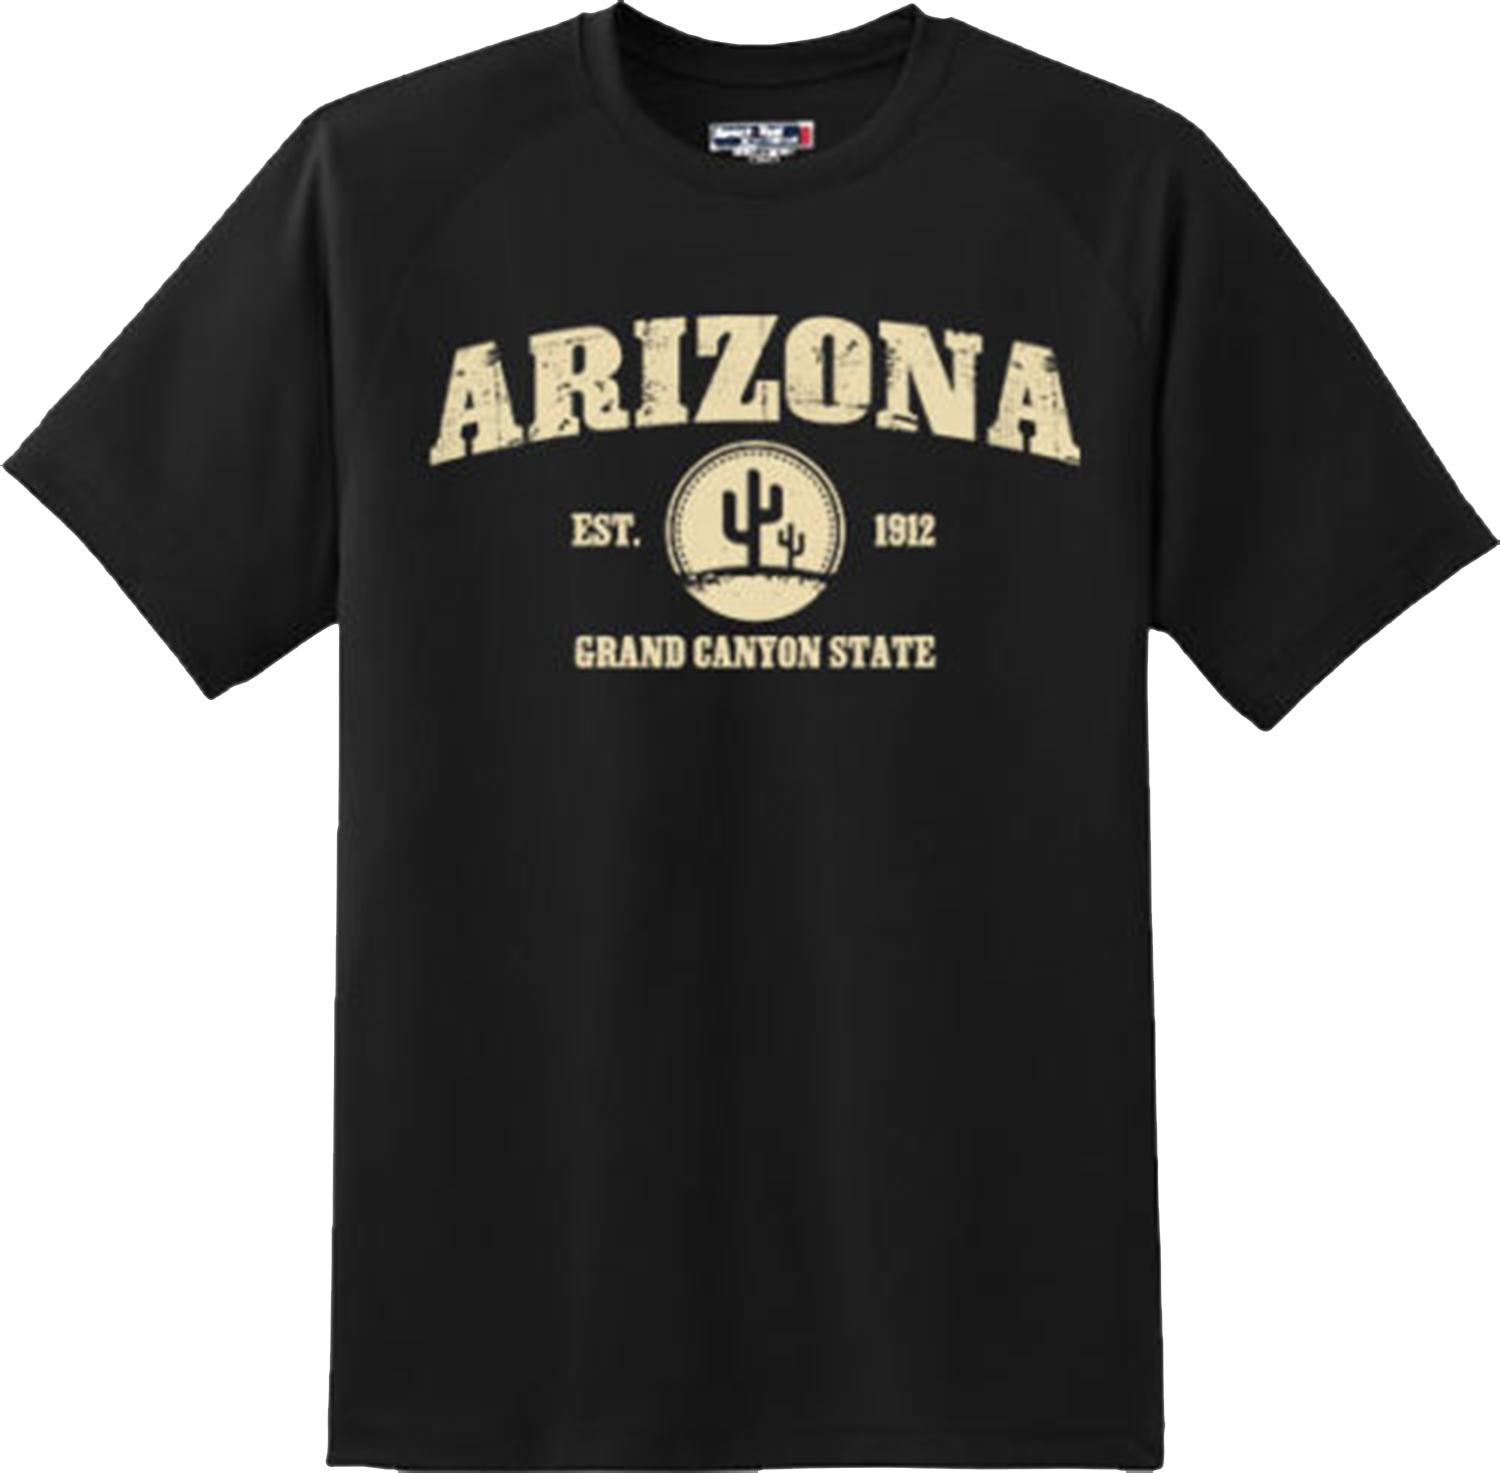 Arizona State Vintage Retro Hometown America Gift T Shirt New Graphic Tee